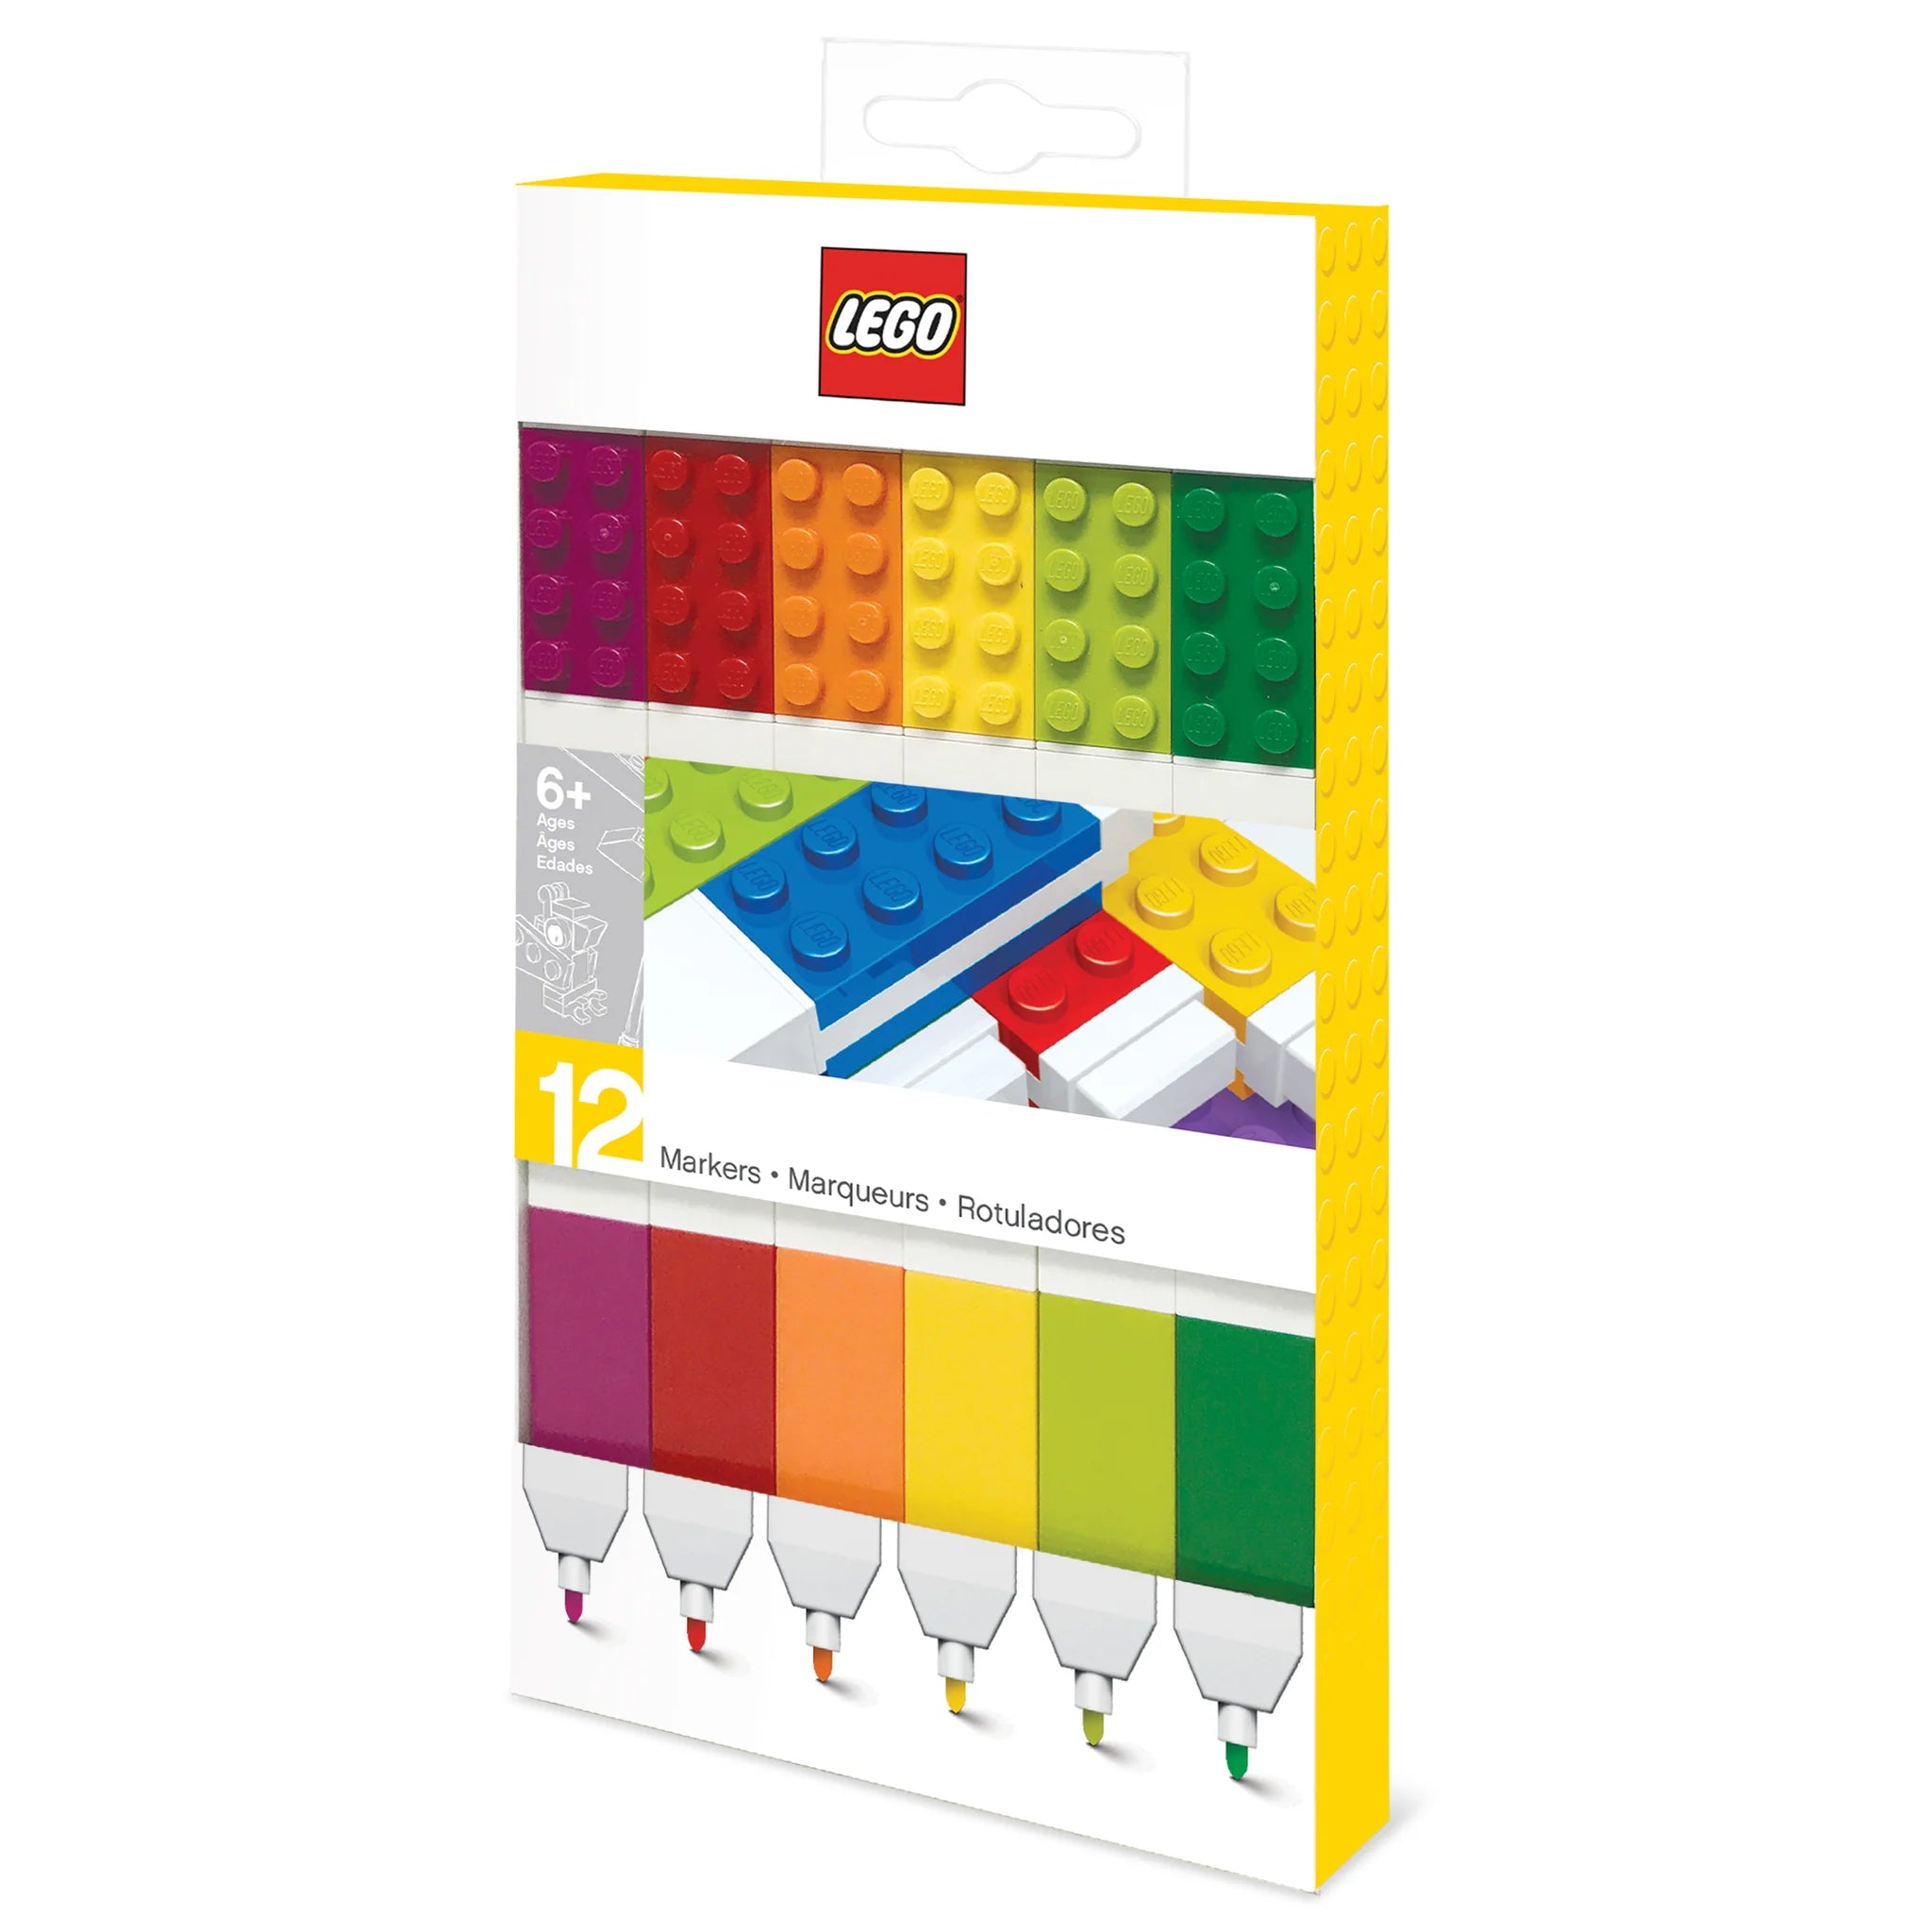 LEGO Iconic 12 Marker Pack